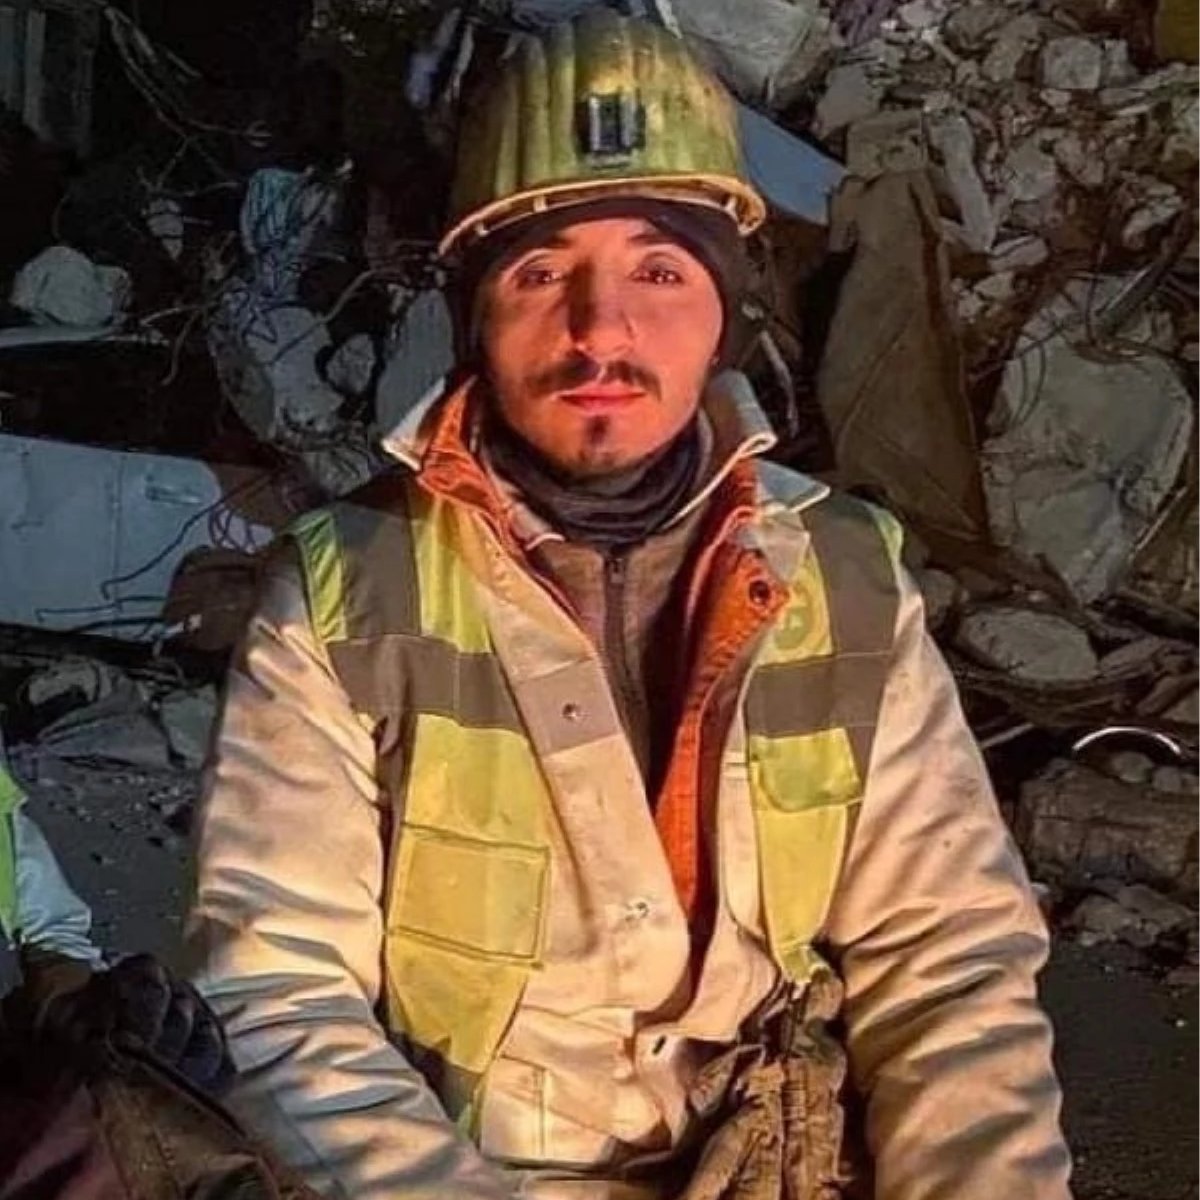 Hatay'da gönüllü olarak kurtarma çalışmalarına katılan madenci Hüseyin Eroğlu, Zonguldak'ta TTK Üzülmez Müessesi'ne bağlı maden ocağında çalışırken üzerine taş ve kömür parçaları düşmesi sonucu hayatını kaybetti.